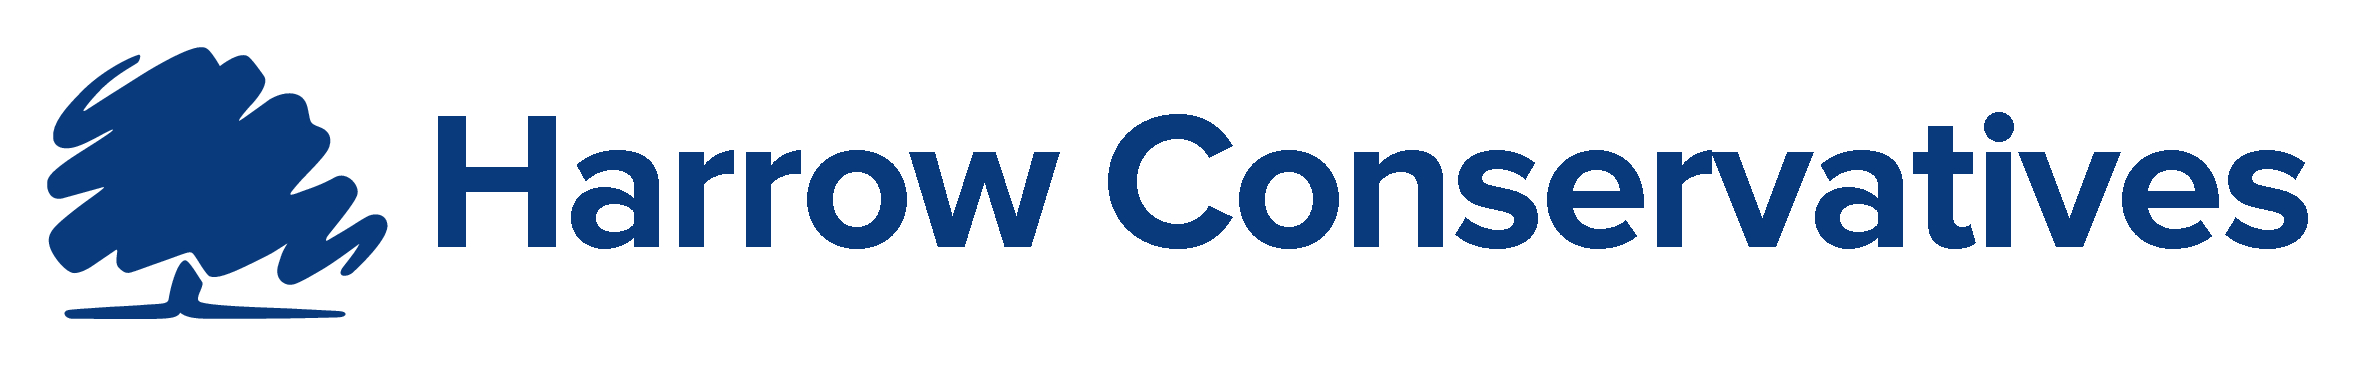 Harrow Conservatives logo